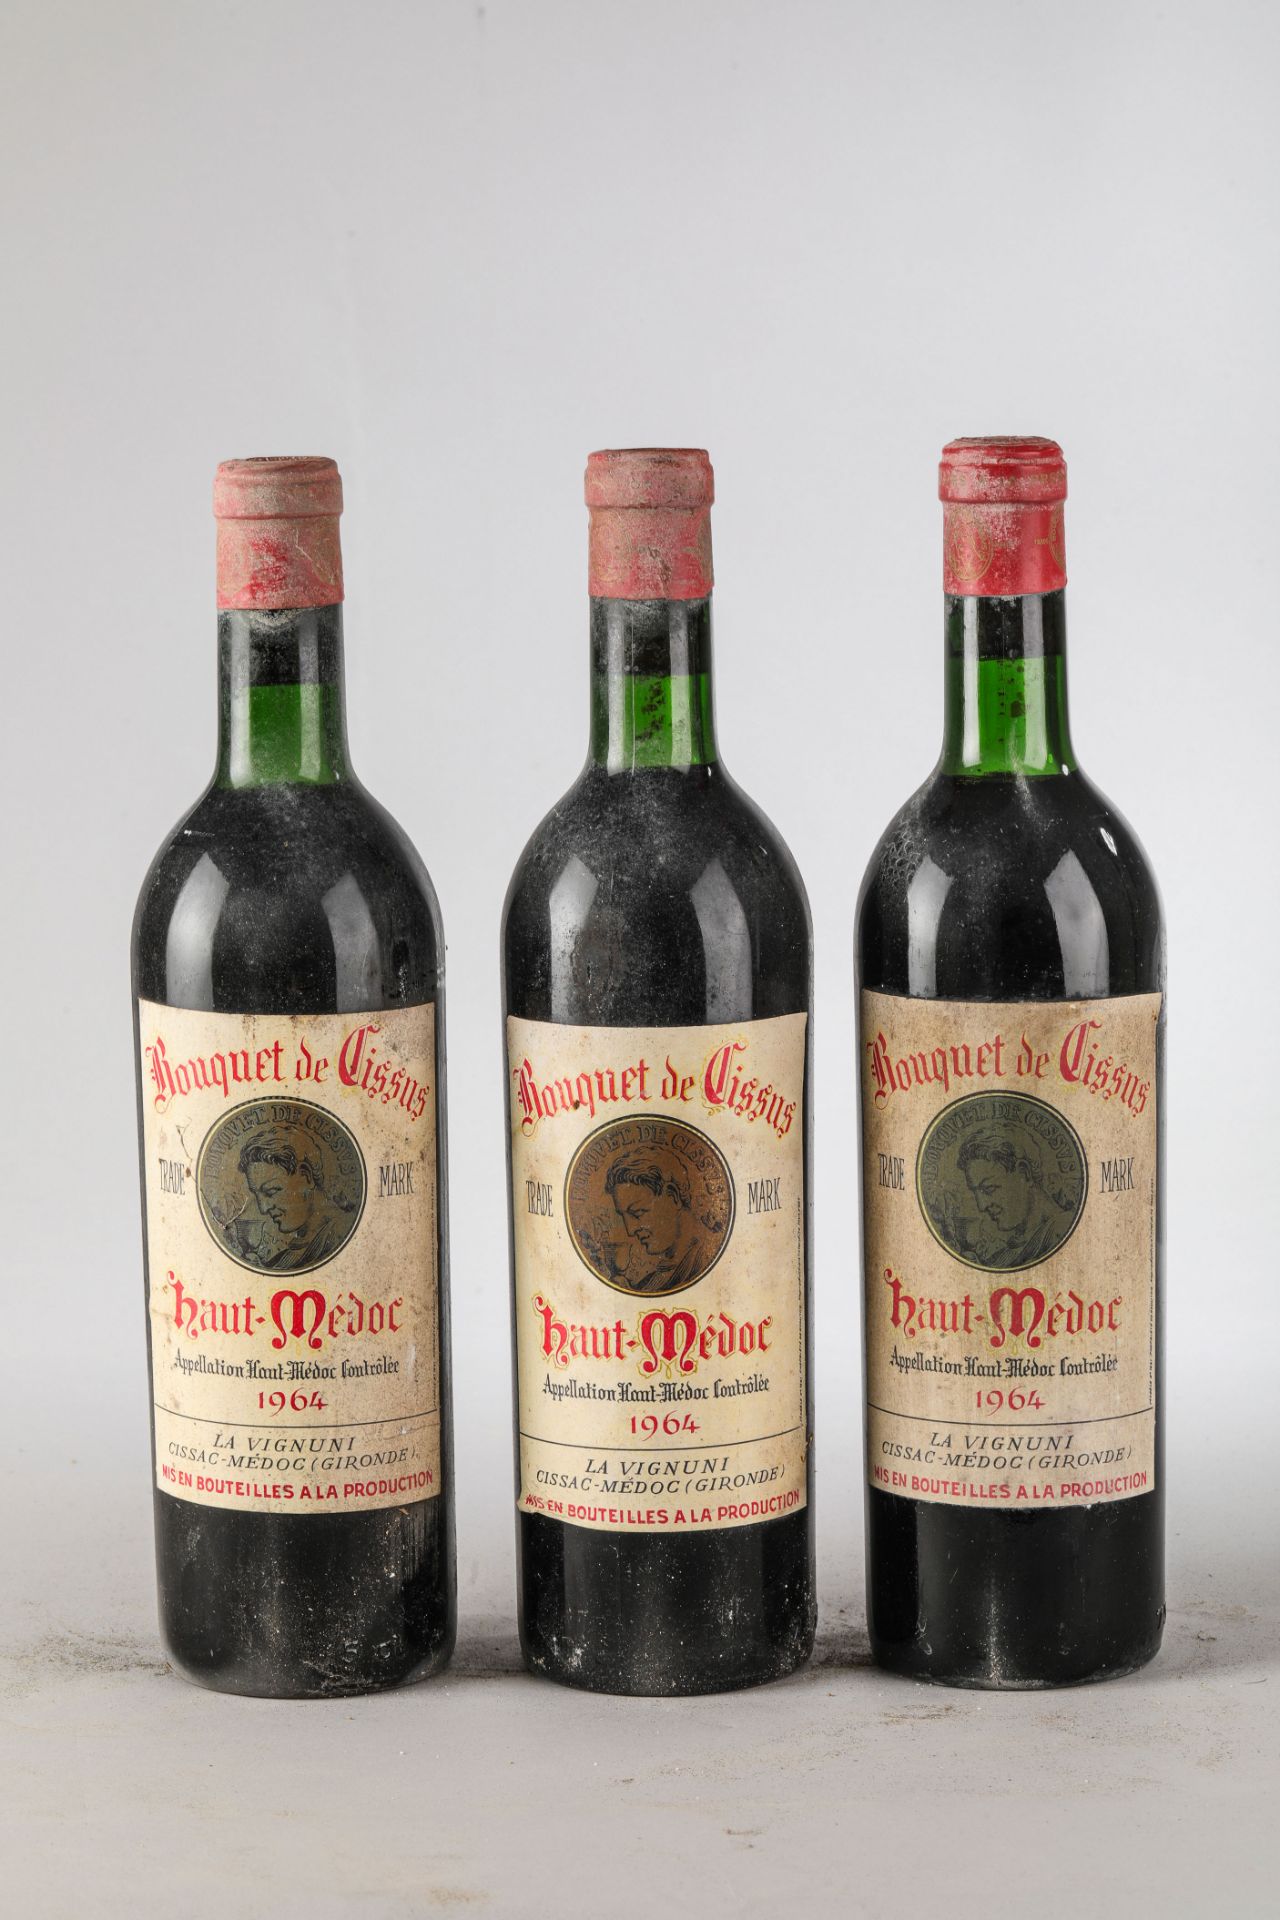 BOUQUET DE CISSUS 19643 bouteilles Haut Medoc